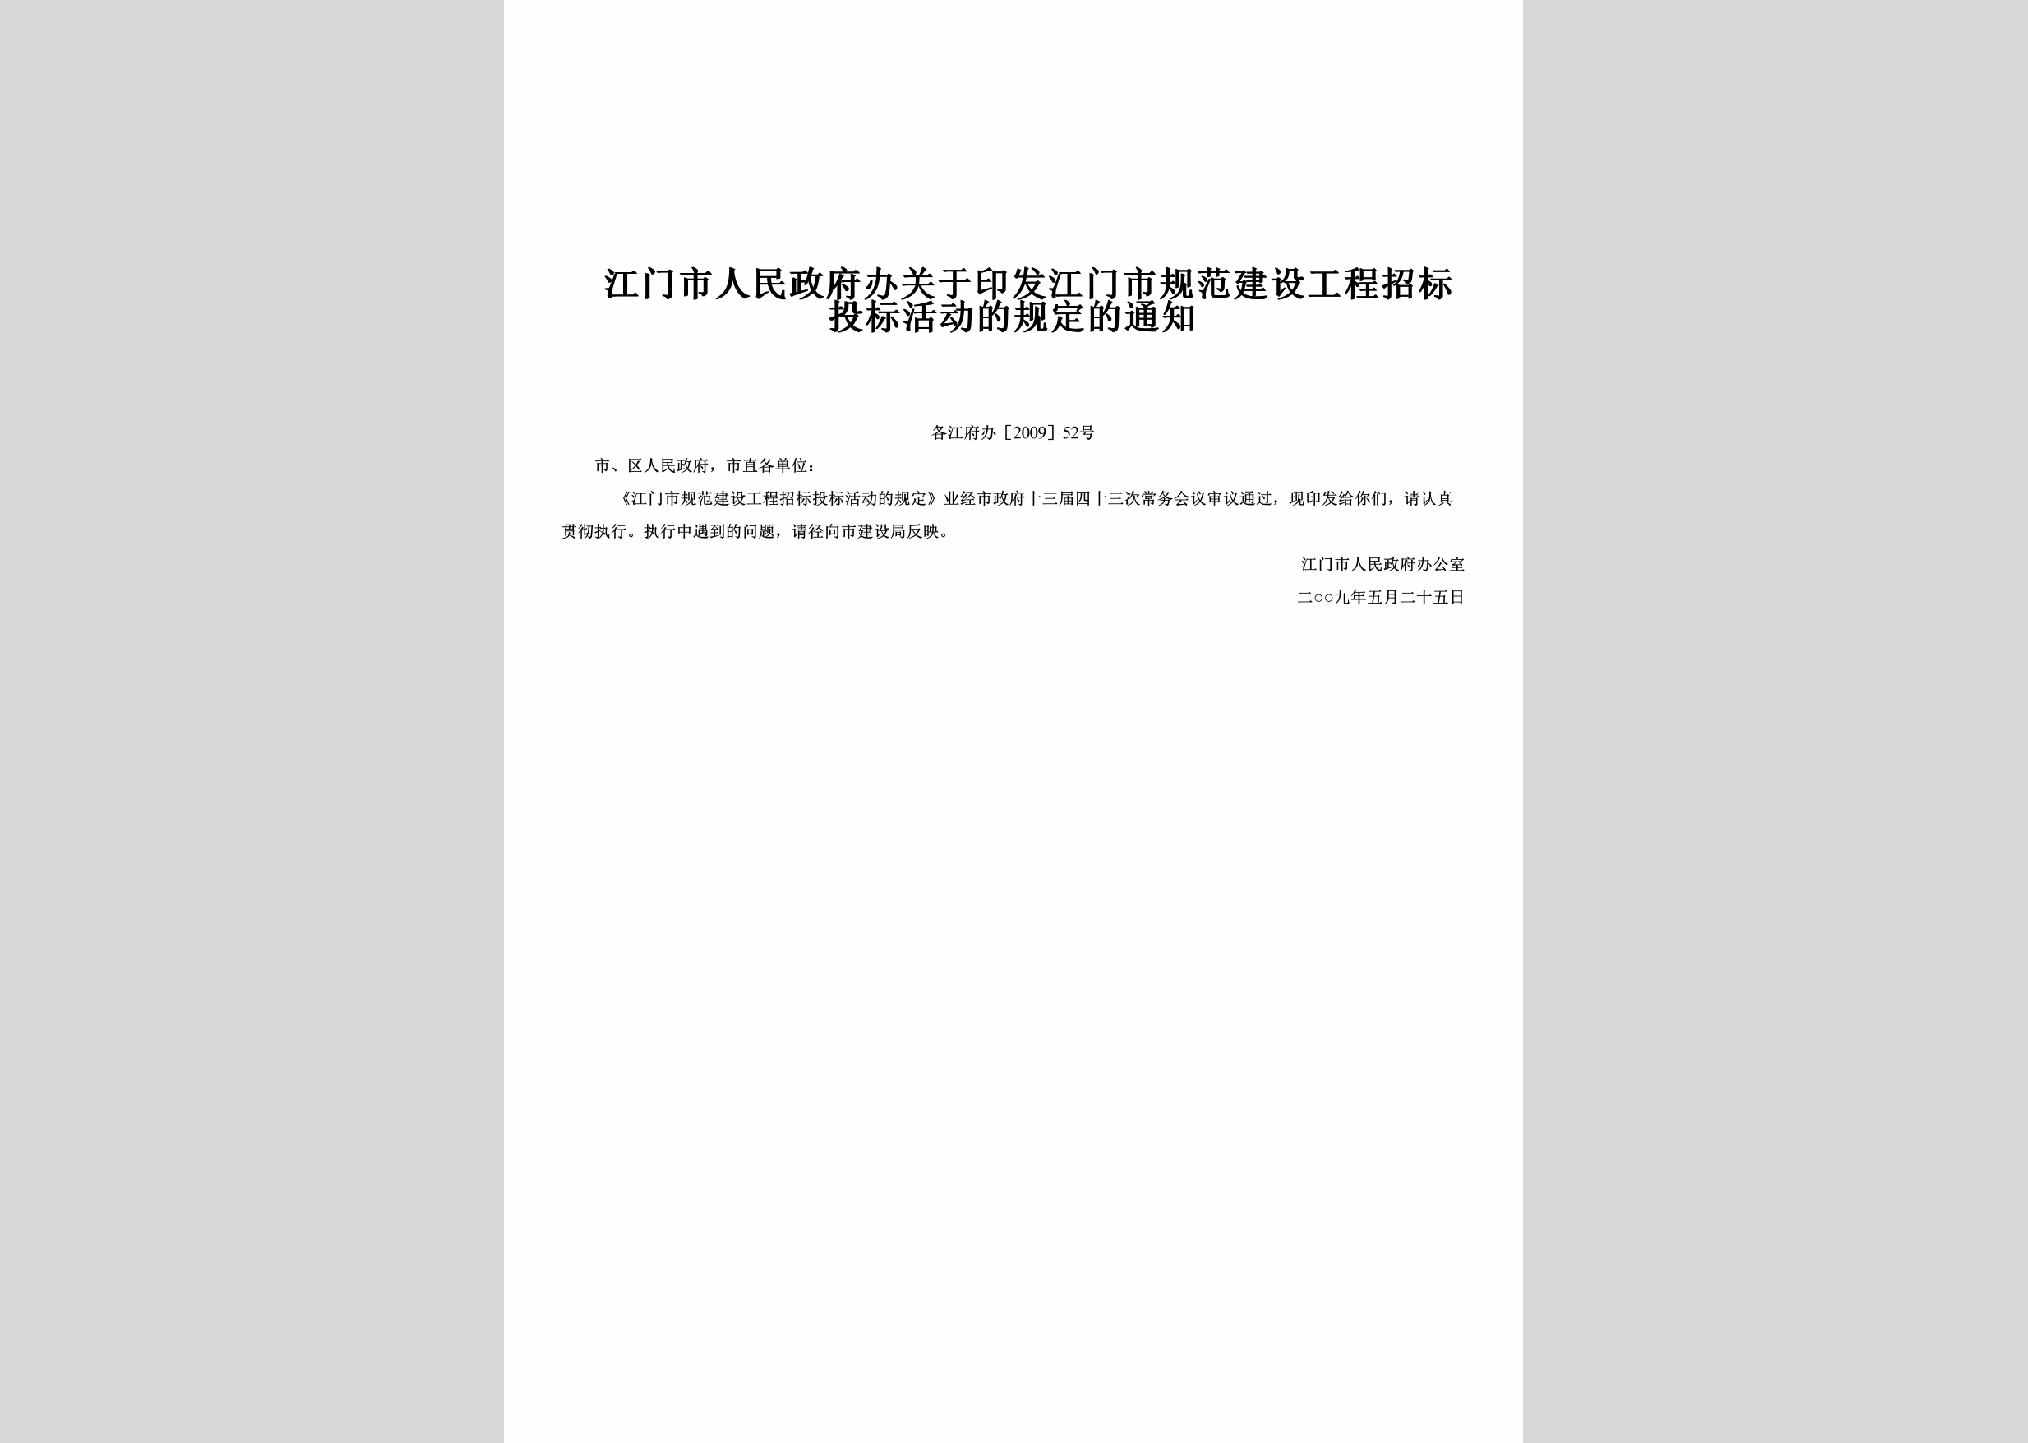 江府办[2009]52号：关于印发江门市规范建设工程招标投标活动的规定的通知